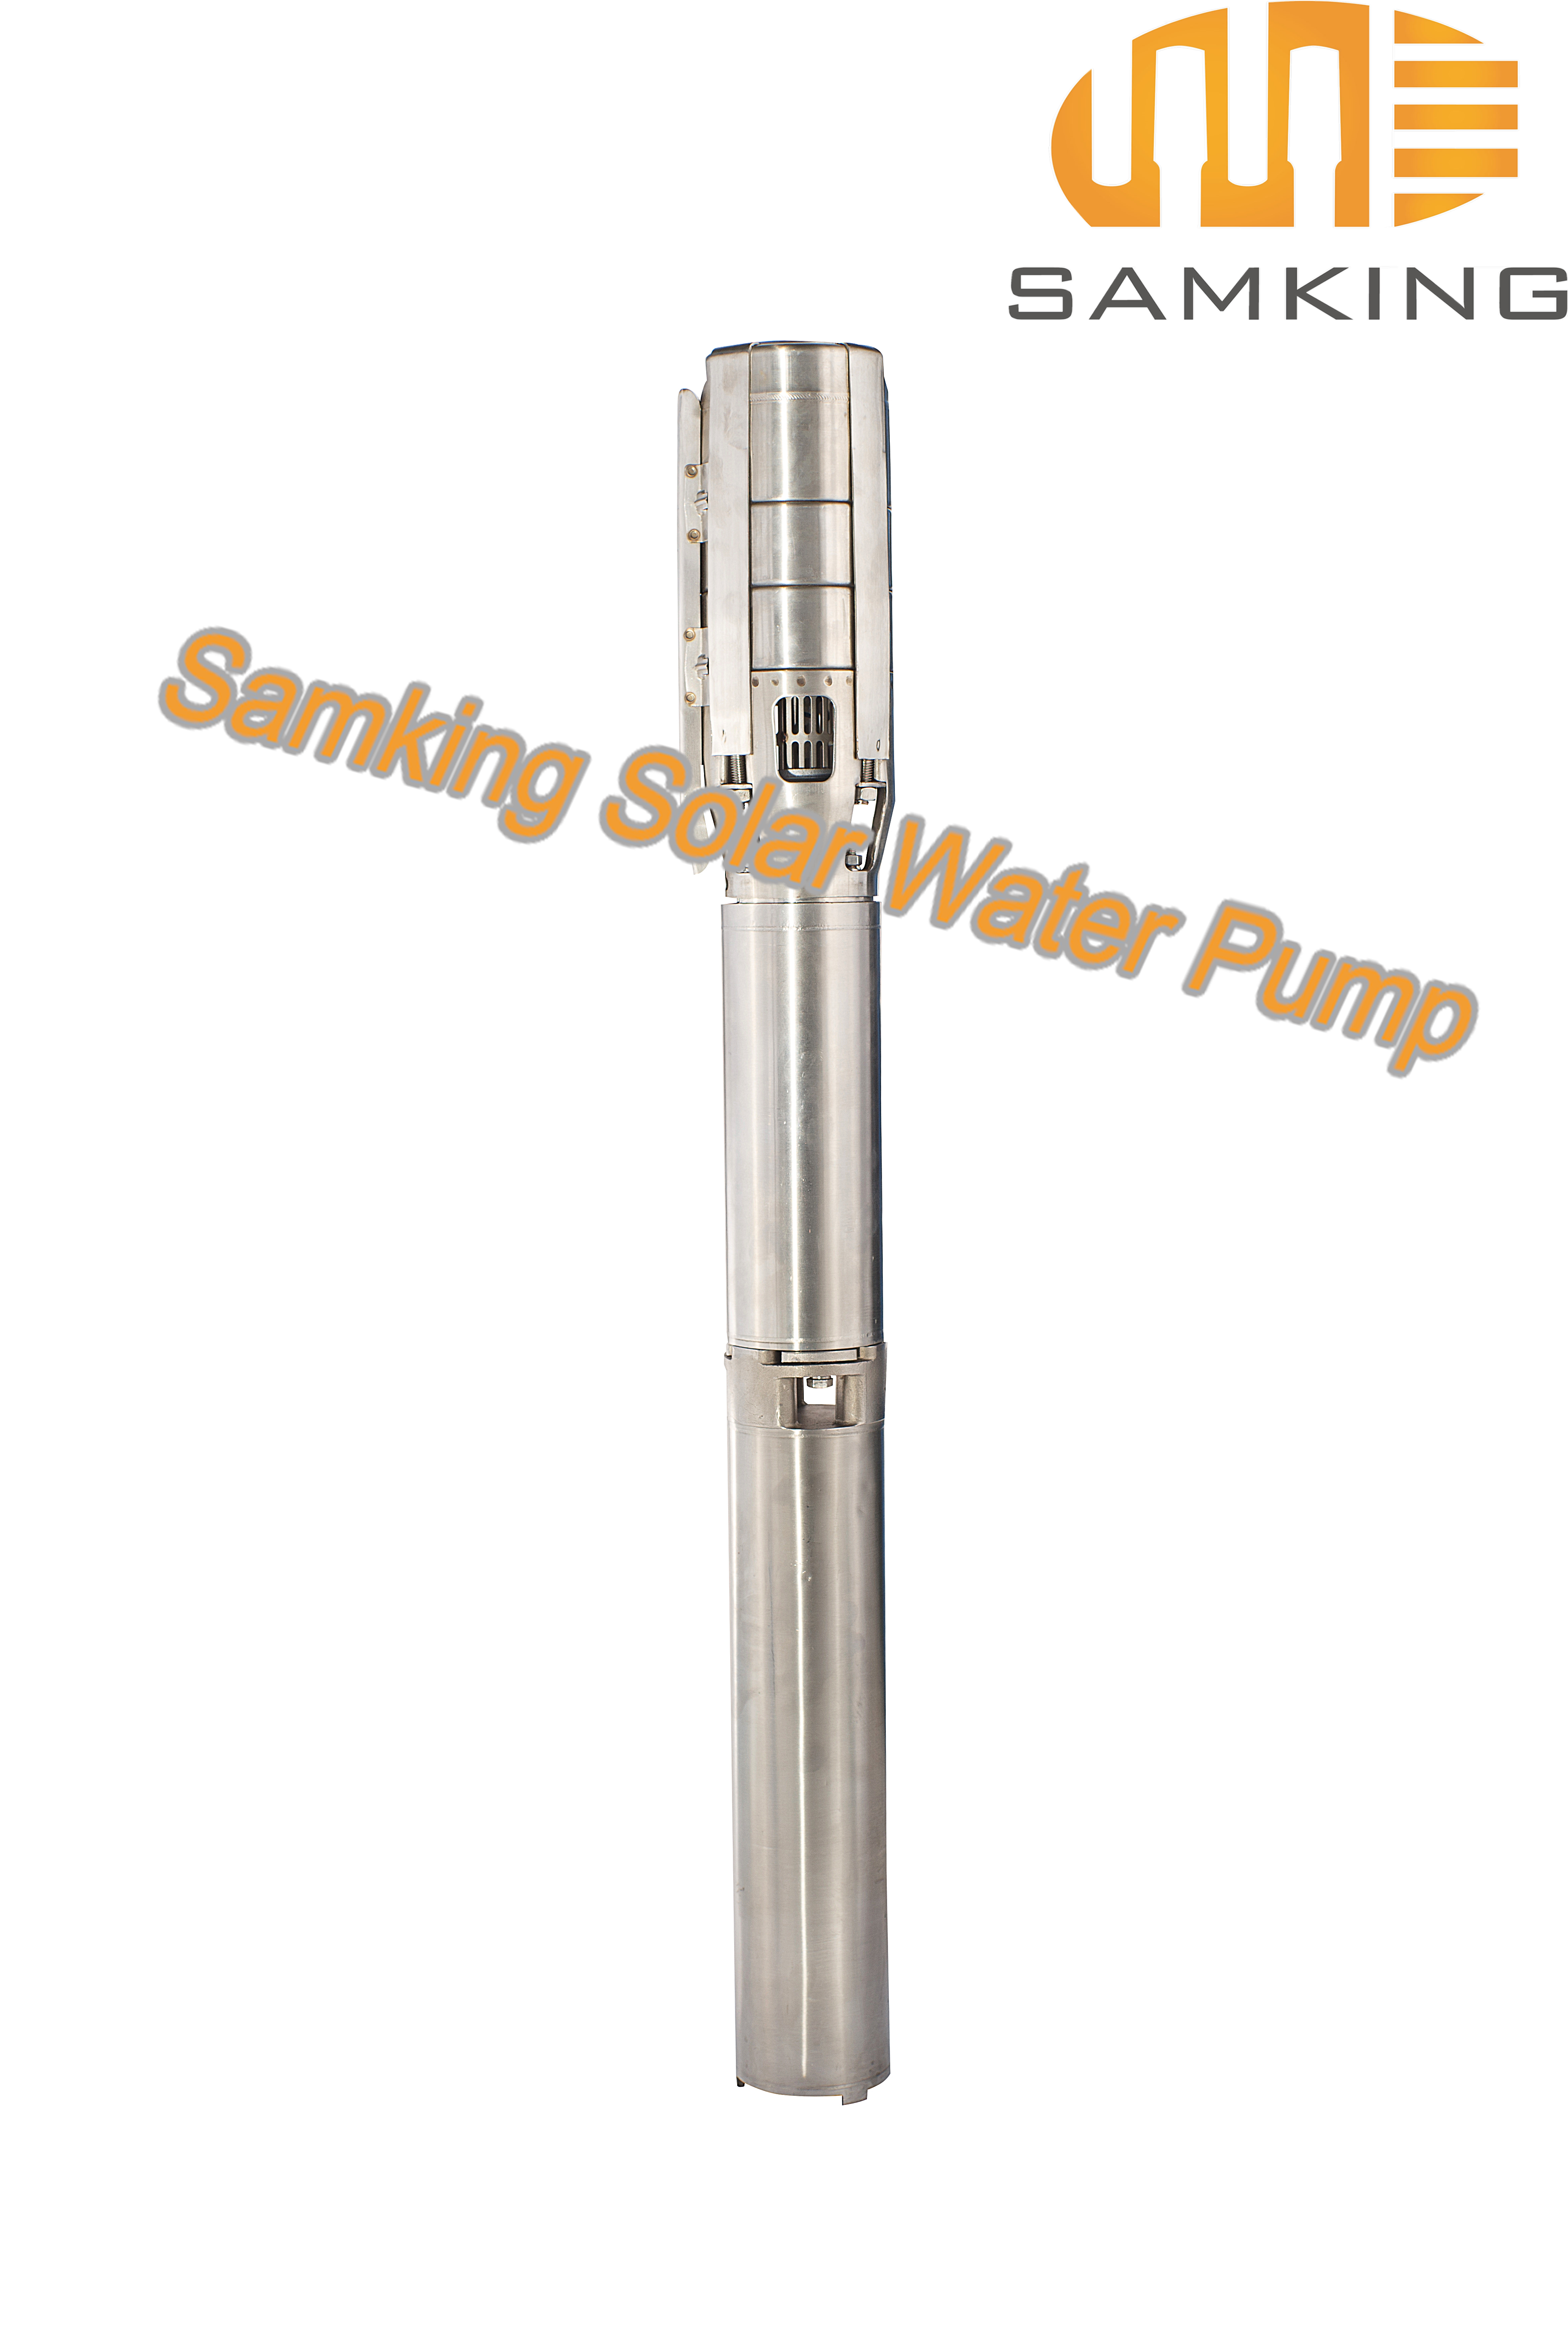 6SP20-2 Samking Solar Water Pump